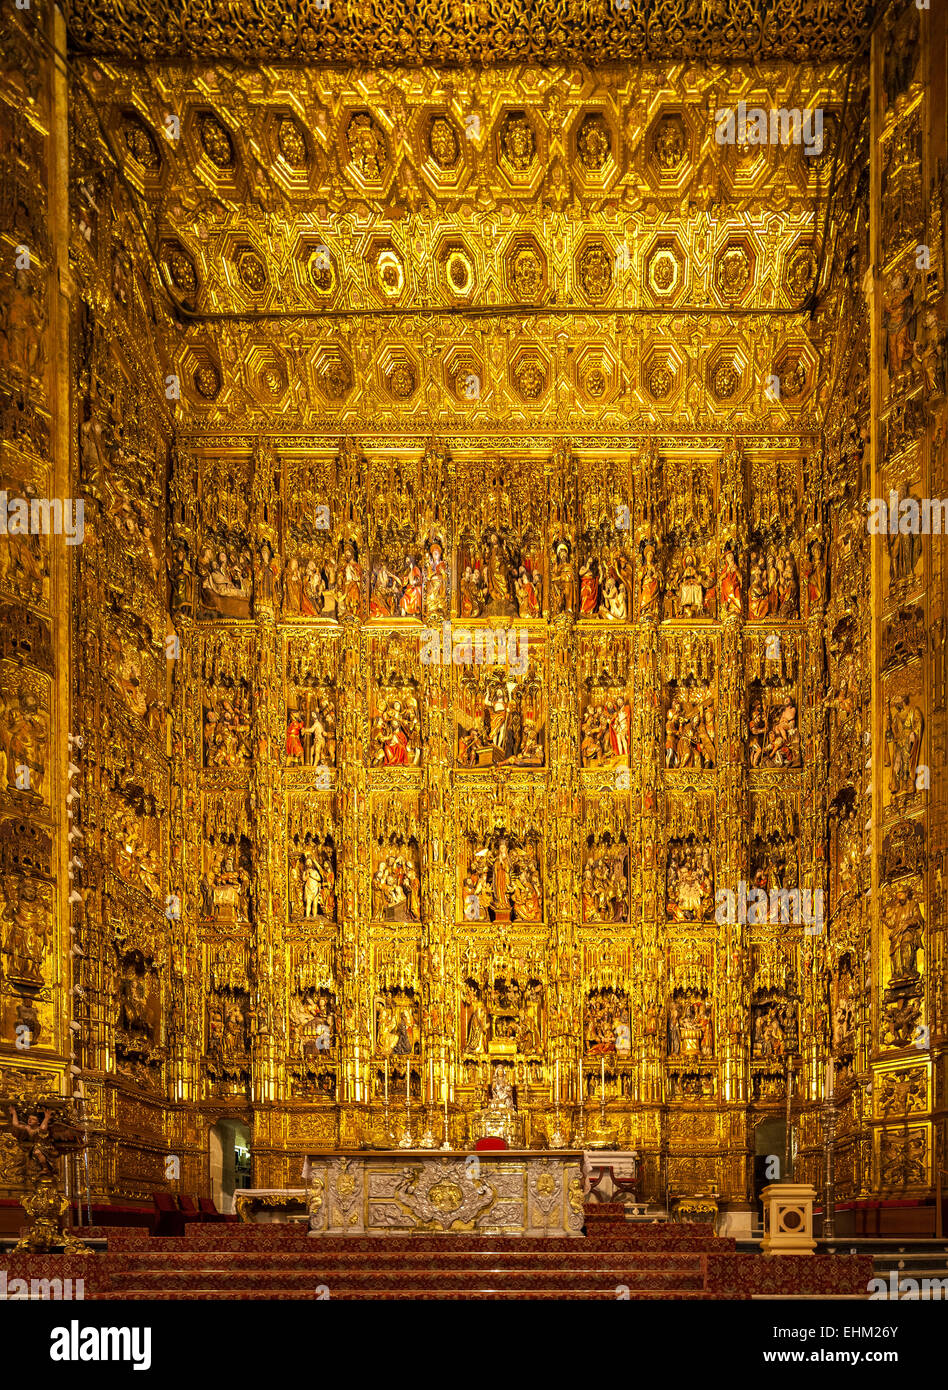 Das größte Altarbild, retablo, reredos, in der Welt in der Kathedrale von Sevilla, Catedral Sevilla Spanien. Stockfoto